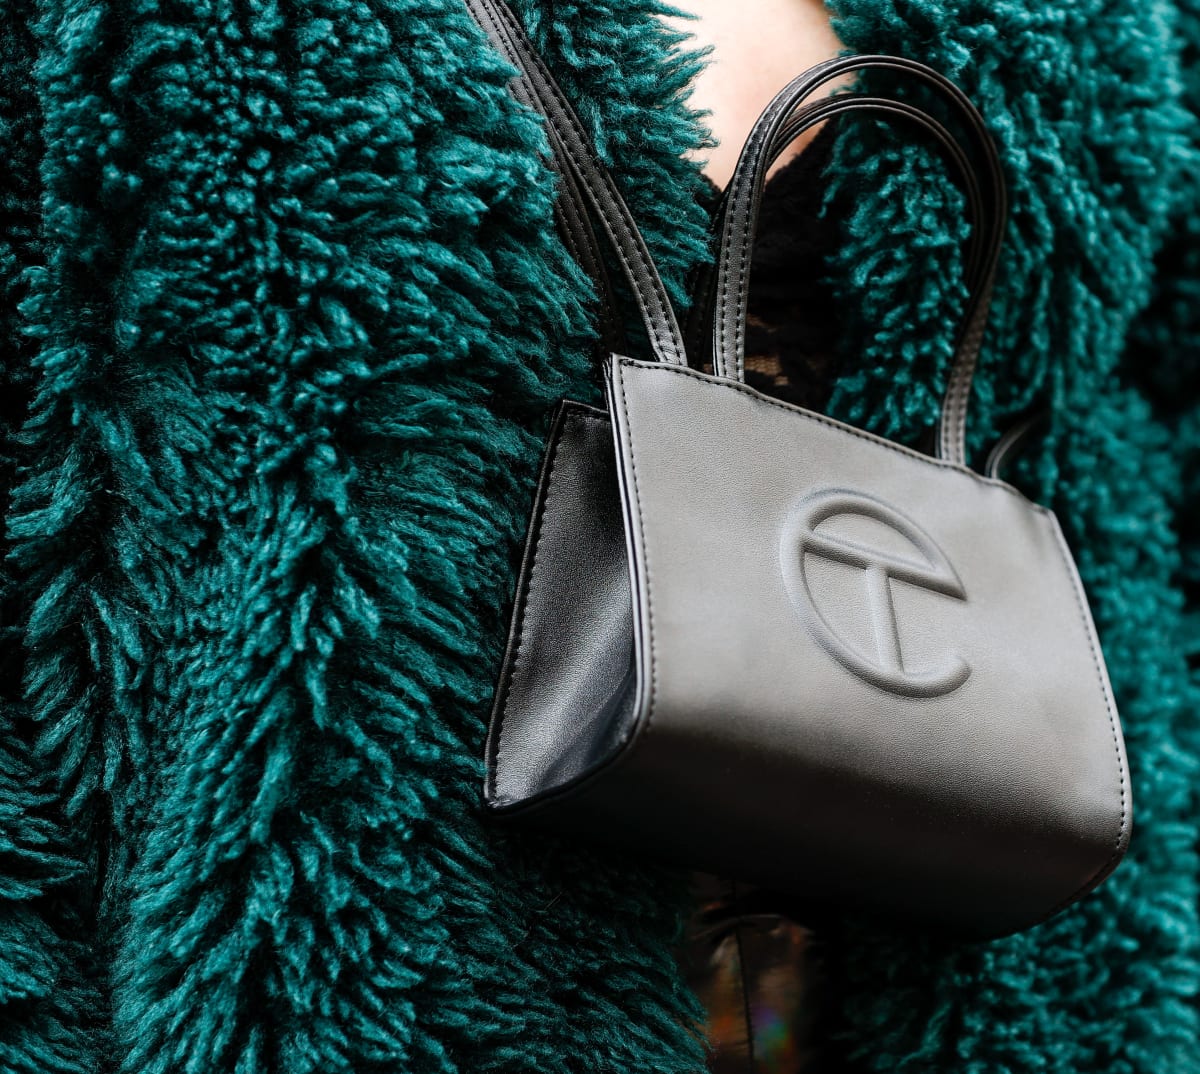 Telfar Bags Are Retaining Their Value Better Than Hermès